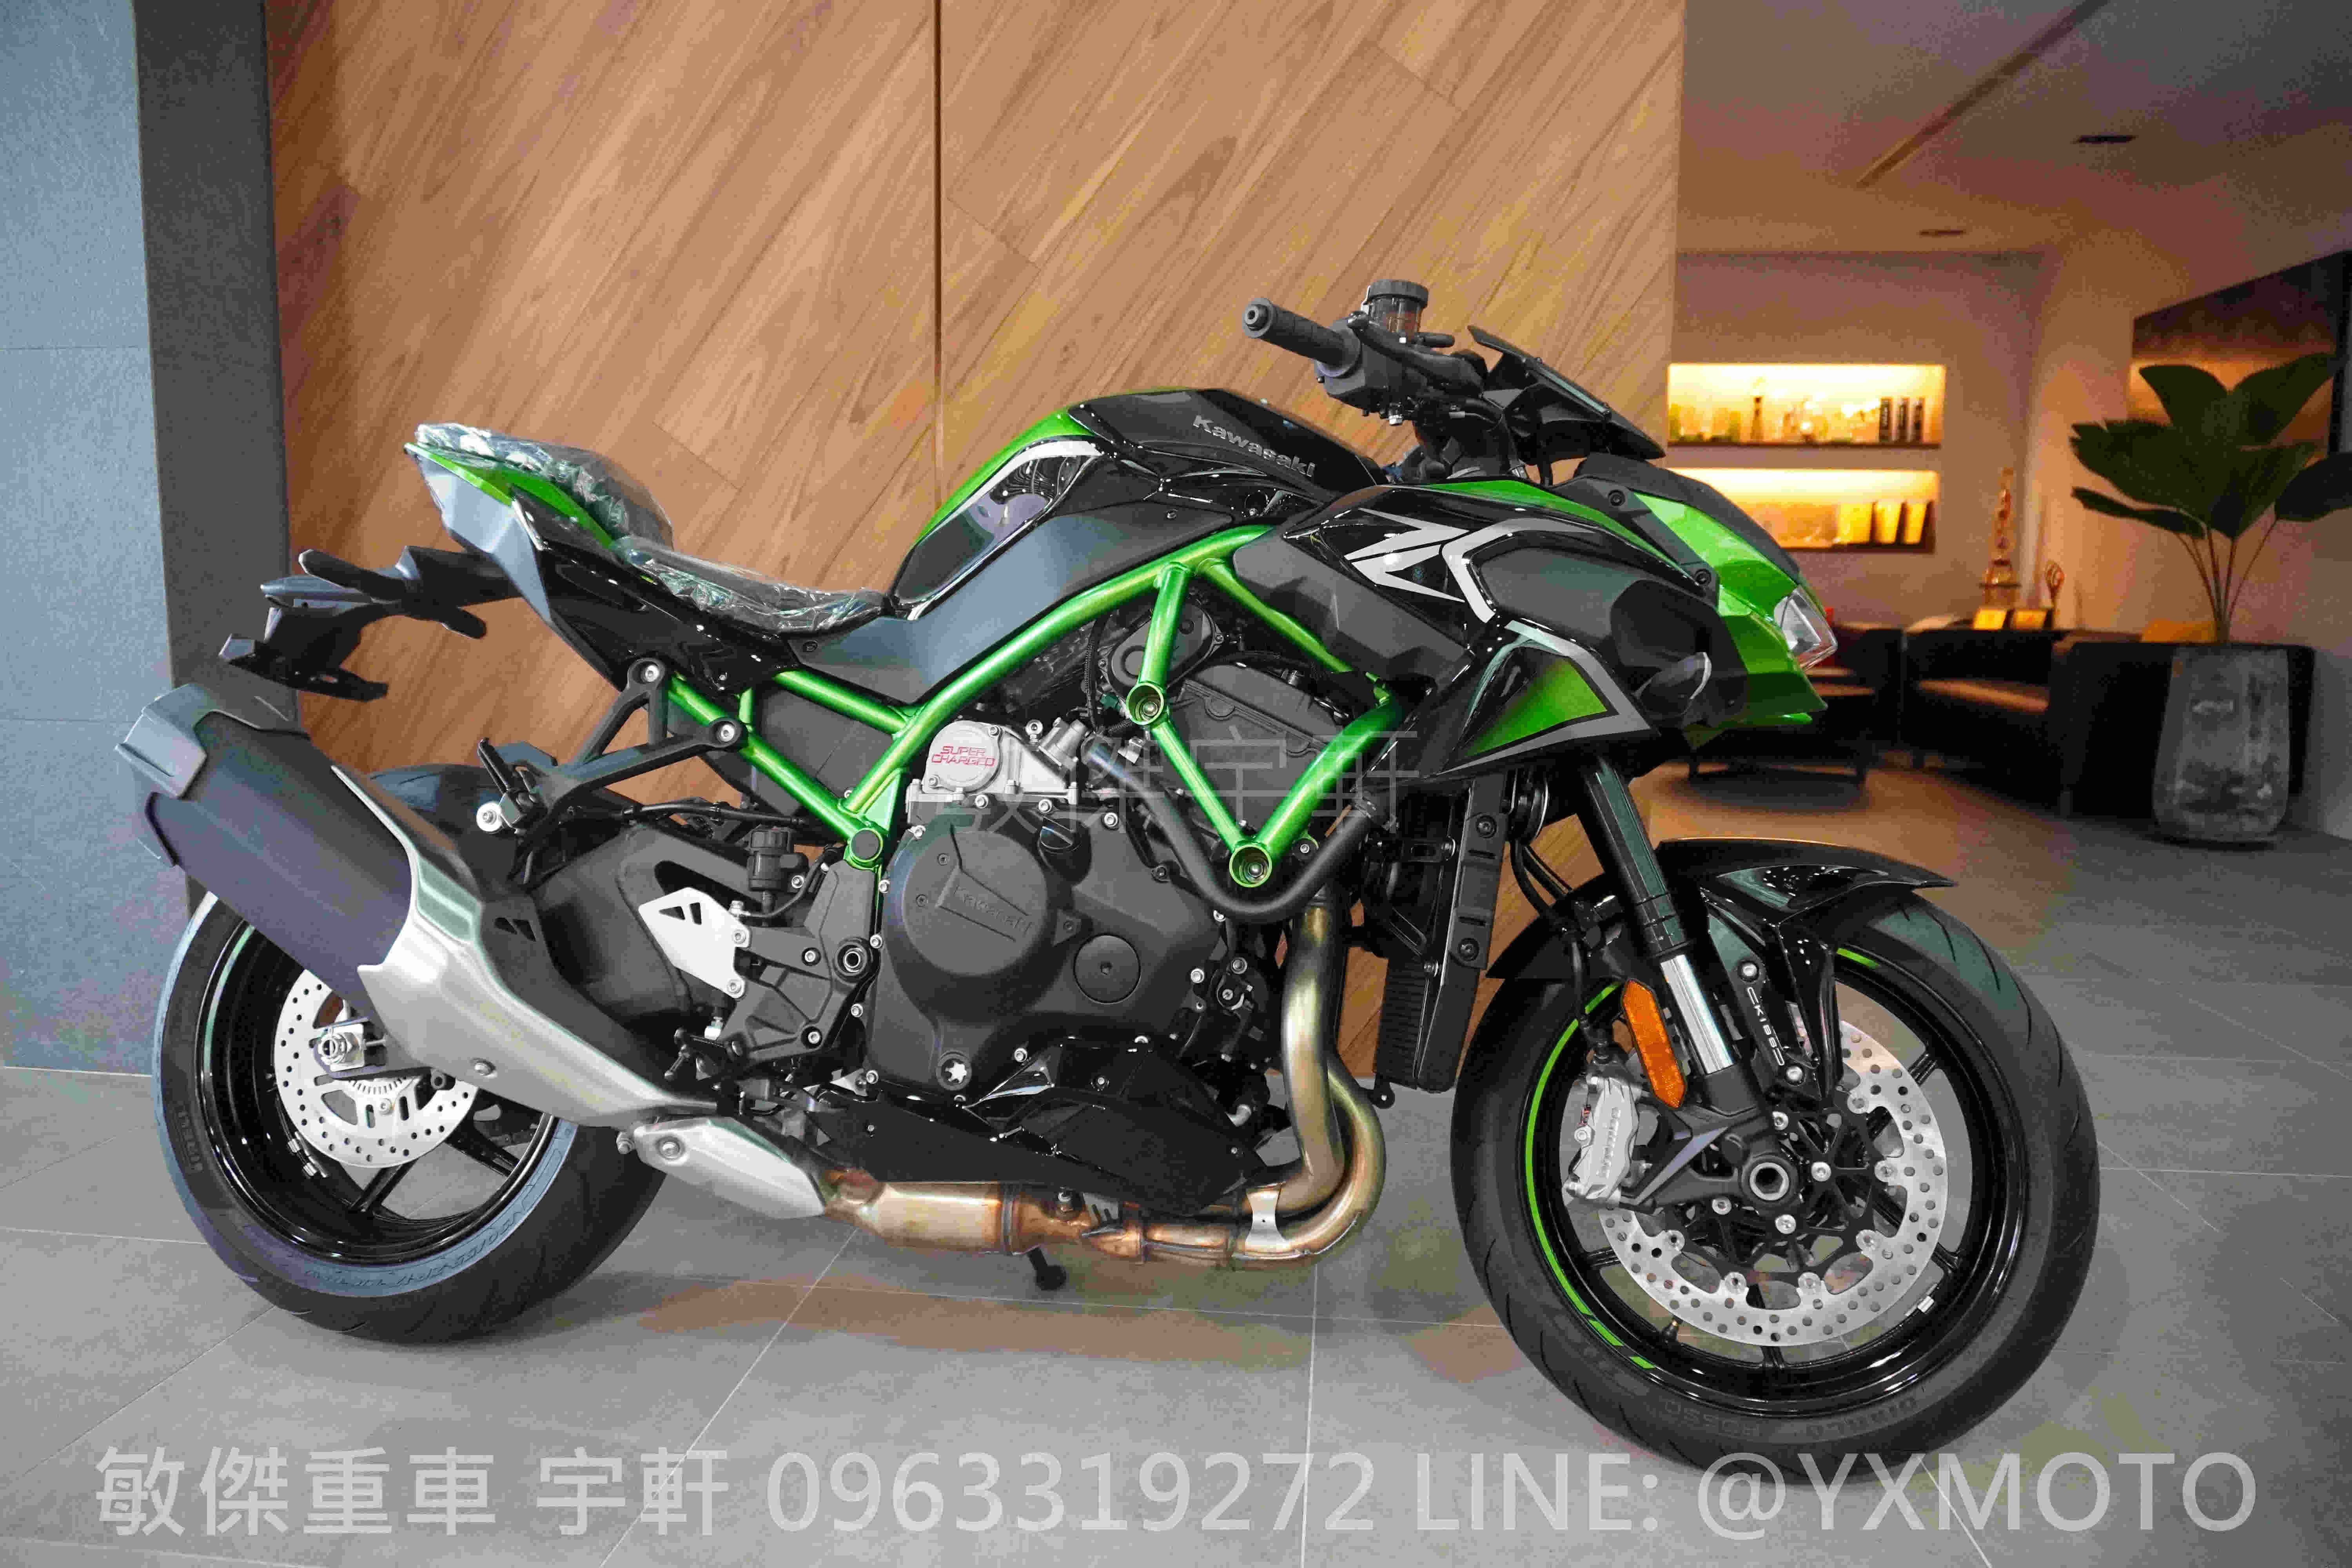 【重車銷售職人-宇軒 (敏傑)】KAWASAKI Z H2 - 「Webike-摩托車市」 【敏傑宇軒】2021 綠色 Kawasaki ZH2 機械增壓街跑 總代理公司車